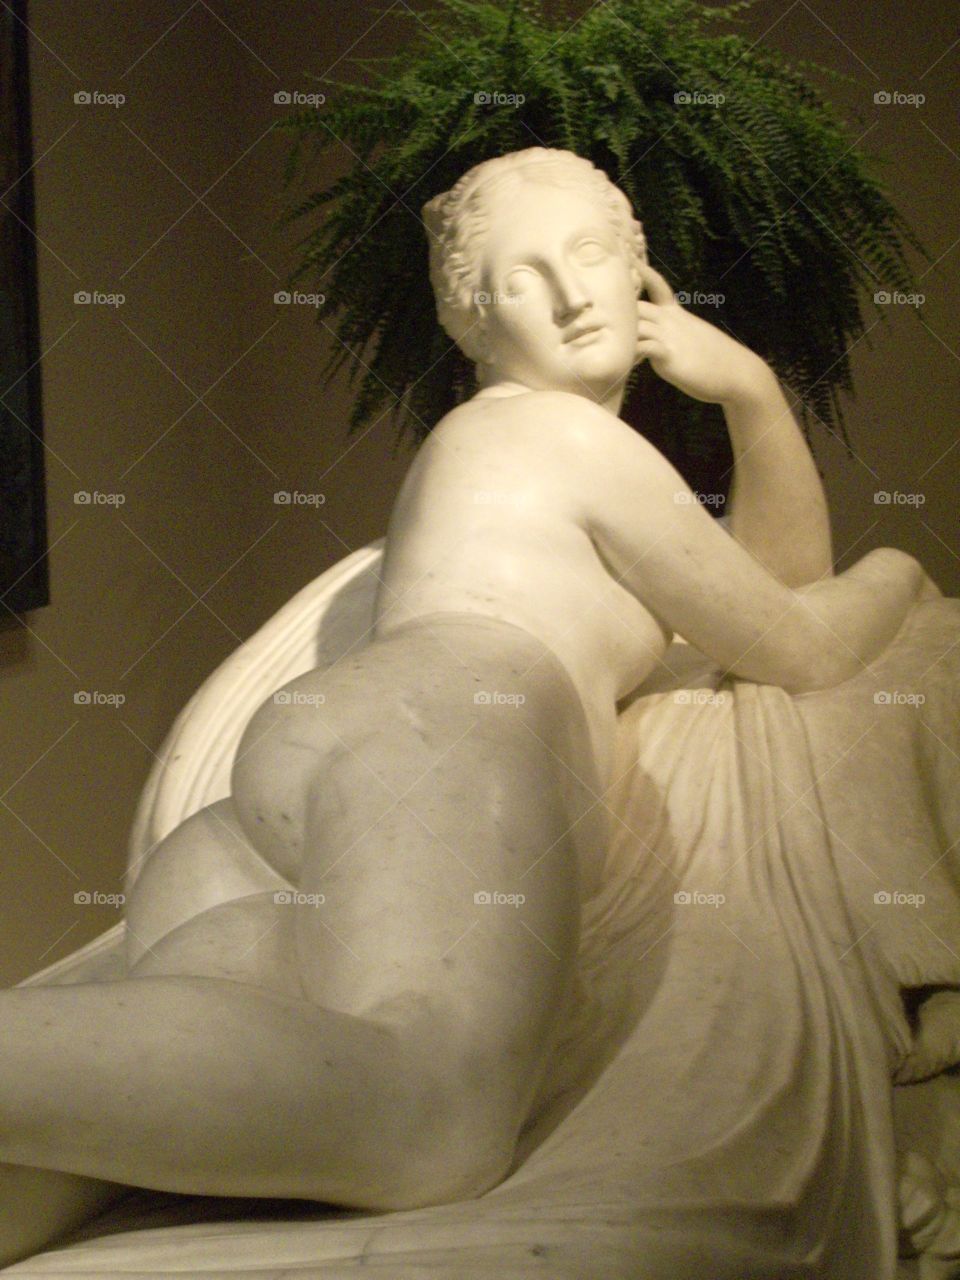 Statue at the Metropolitan museum of art 